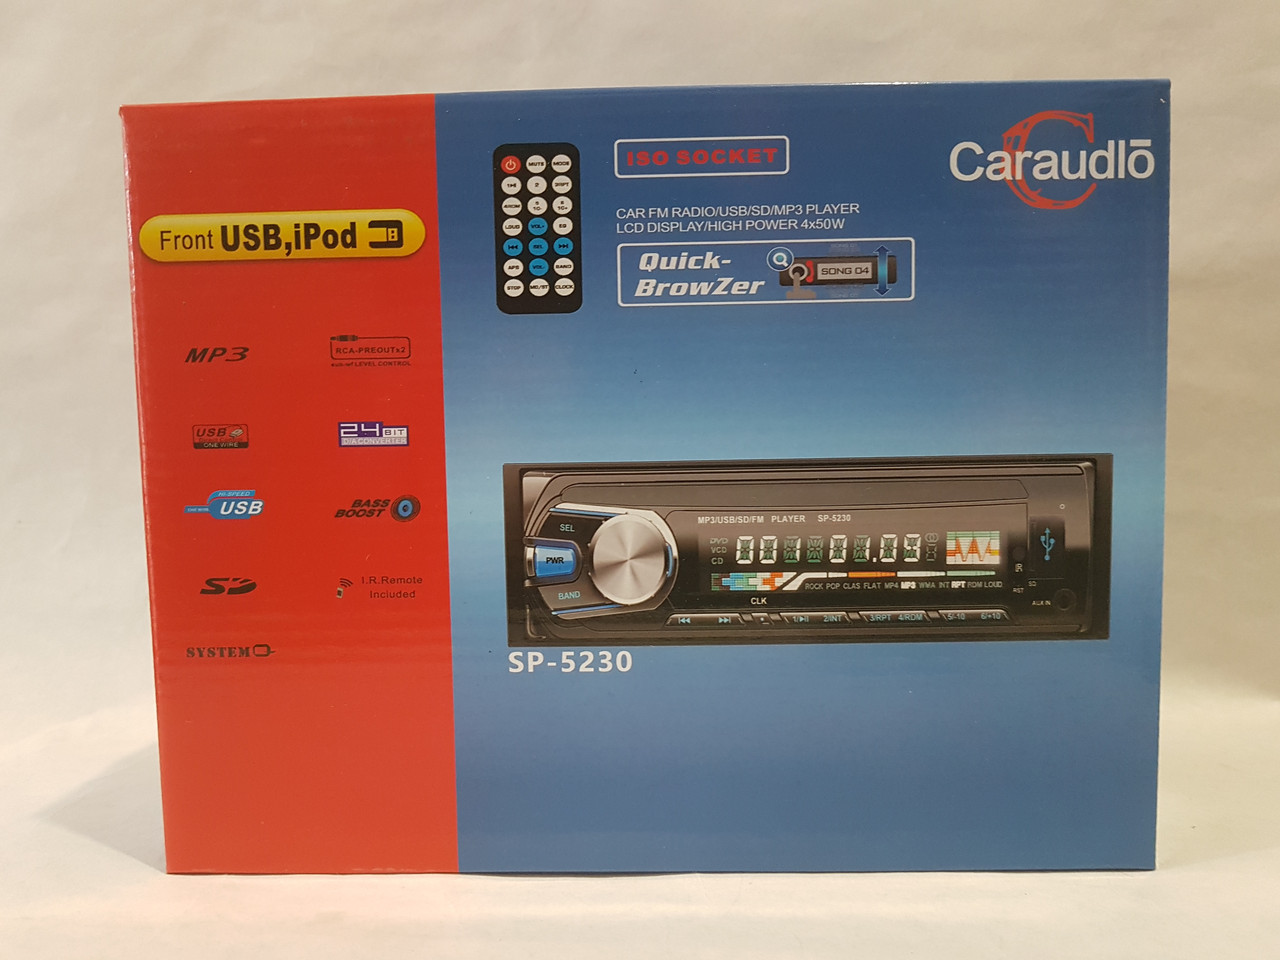 Стильная магнитола в машину Car Audio SP-5219 USB SD стандартный размер 1DIN популярная магнитола еврофишка